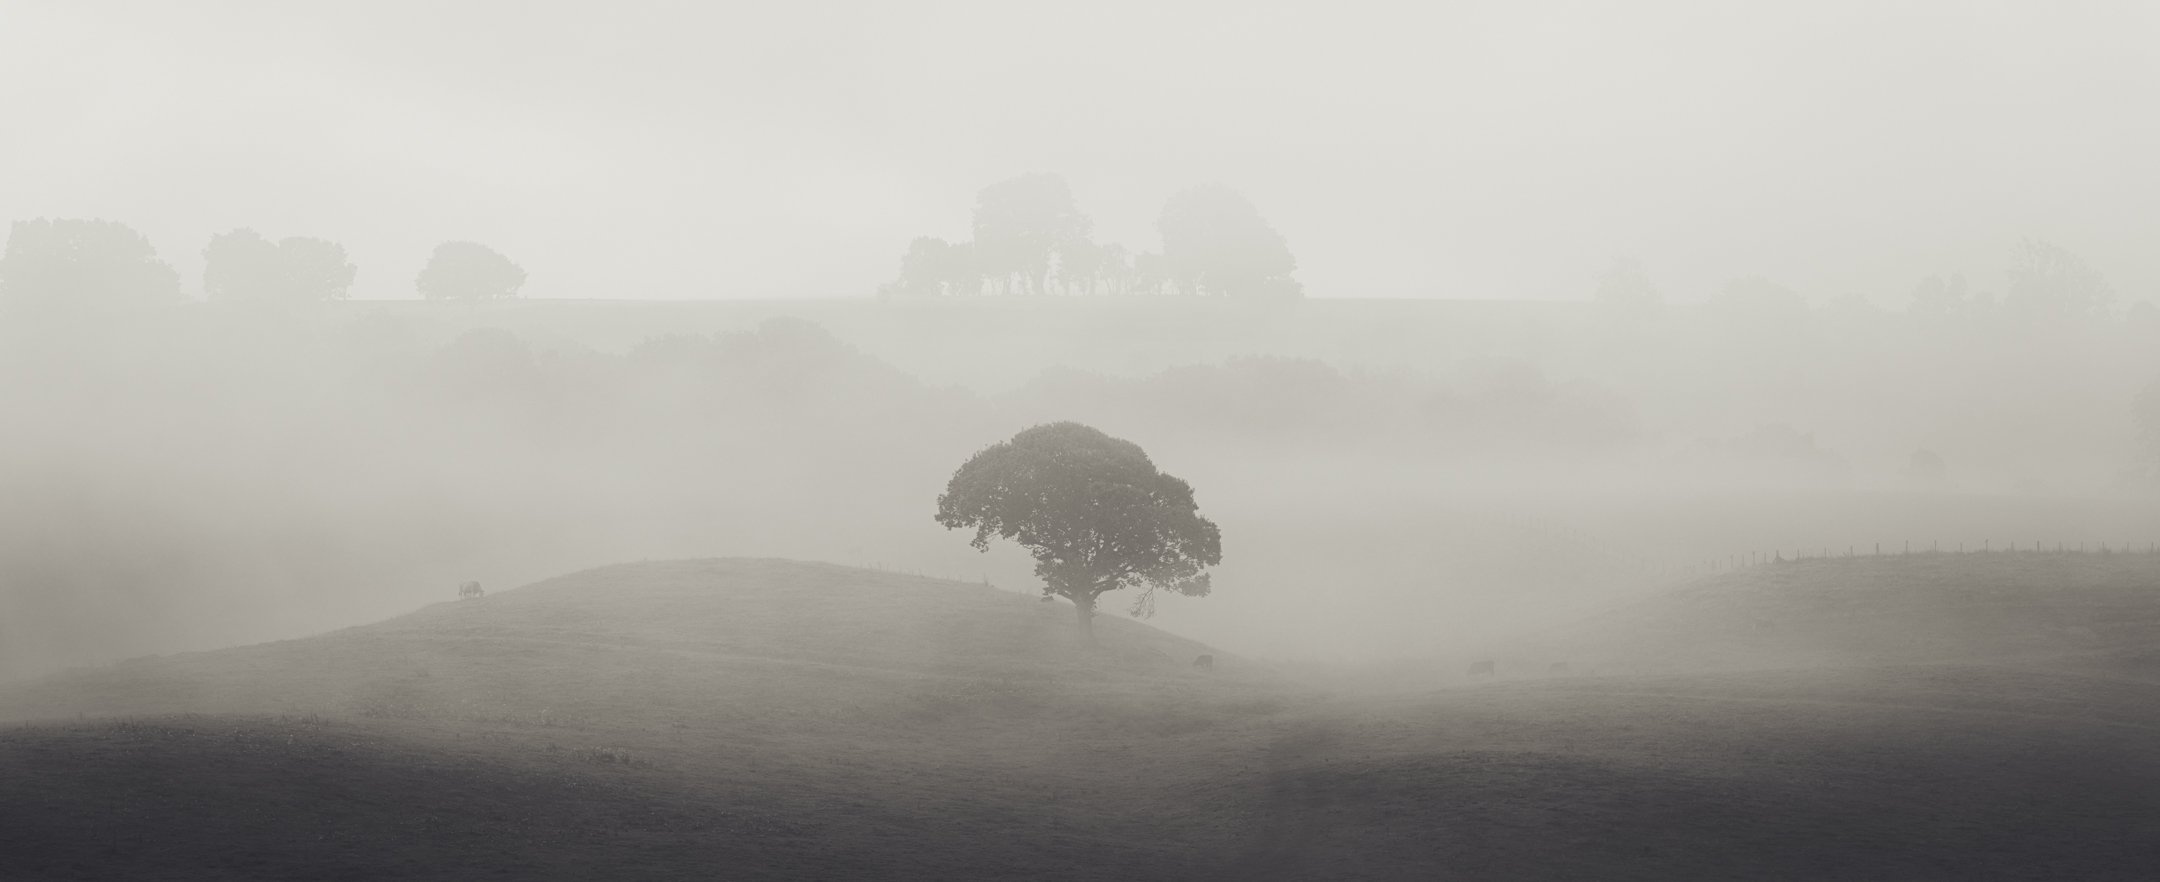 Lone Oak Tree in Misty Field